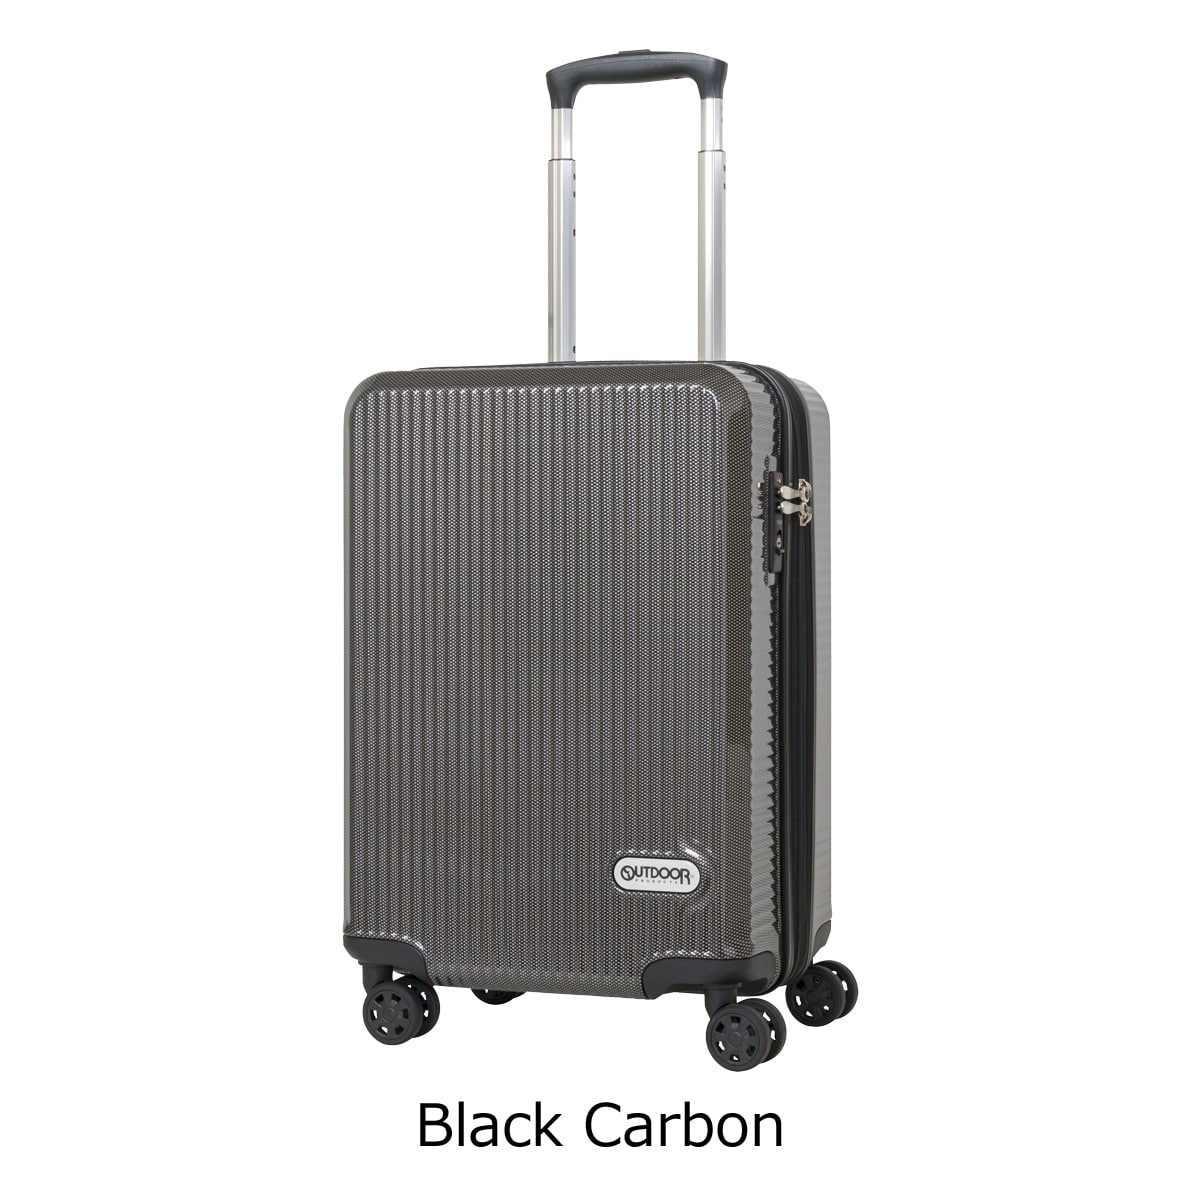 アウトドアプロダクツ スーツケース 45L 49.5cm 3.2kg OD-0808-50 